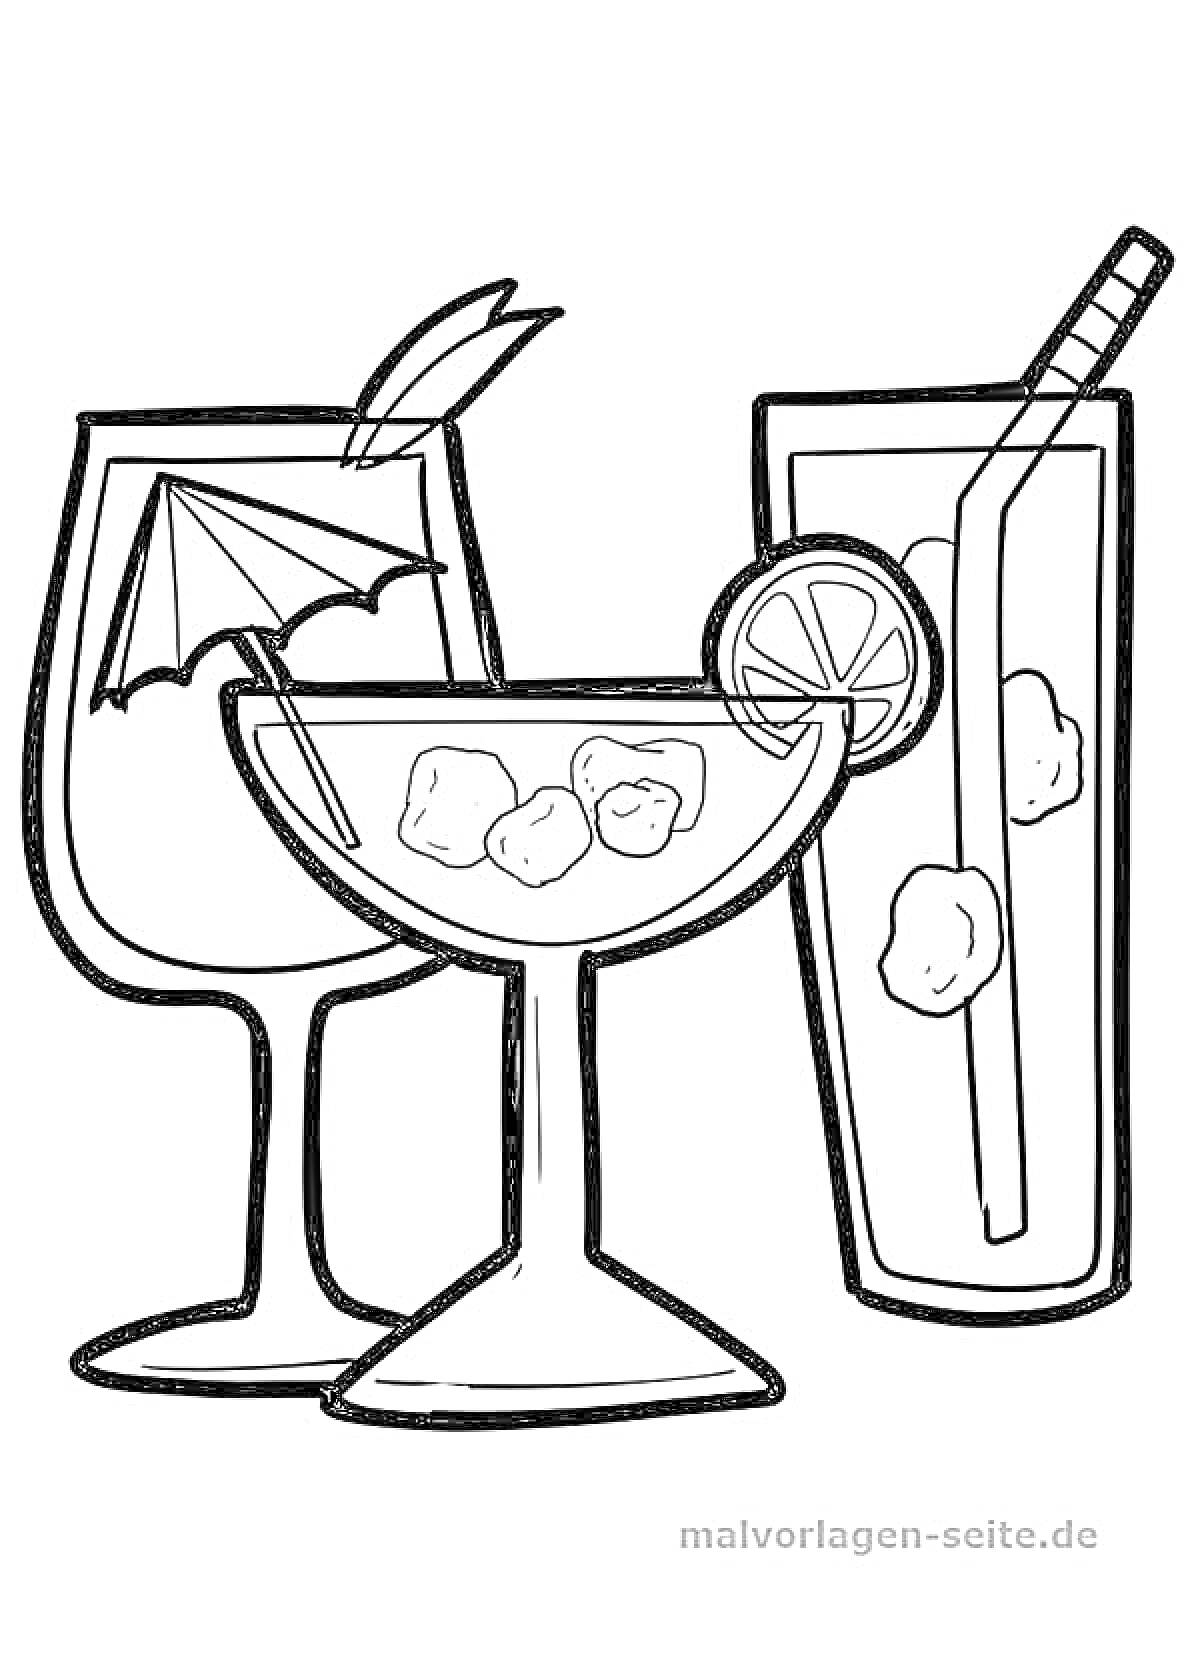 Раскраска Три коктейля: бокал для маргариты с зонтиком и листом, бокал мартини со льдом и ободком с долькой фрукта, высокий бокал с трубочкой и льдом